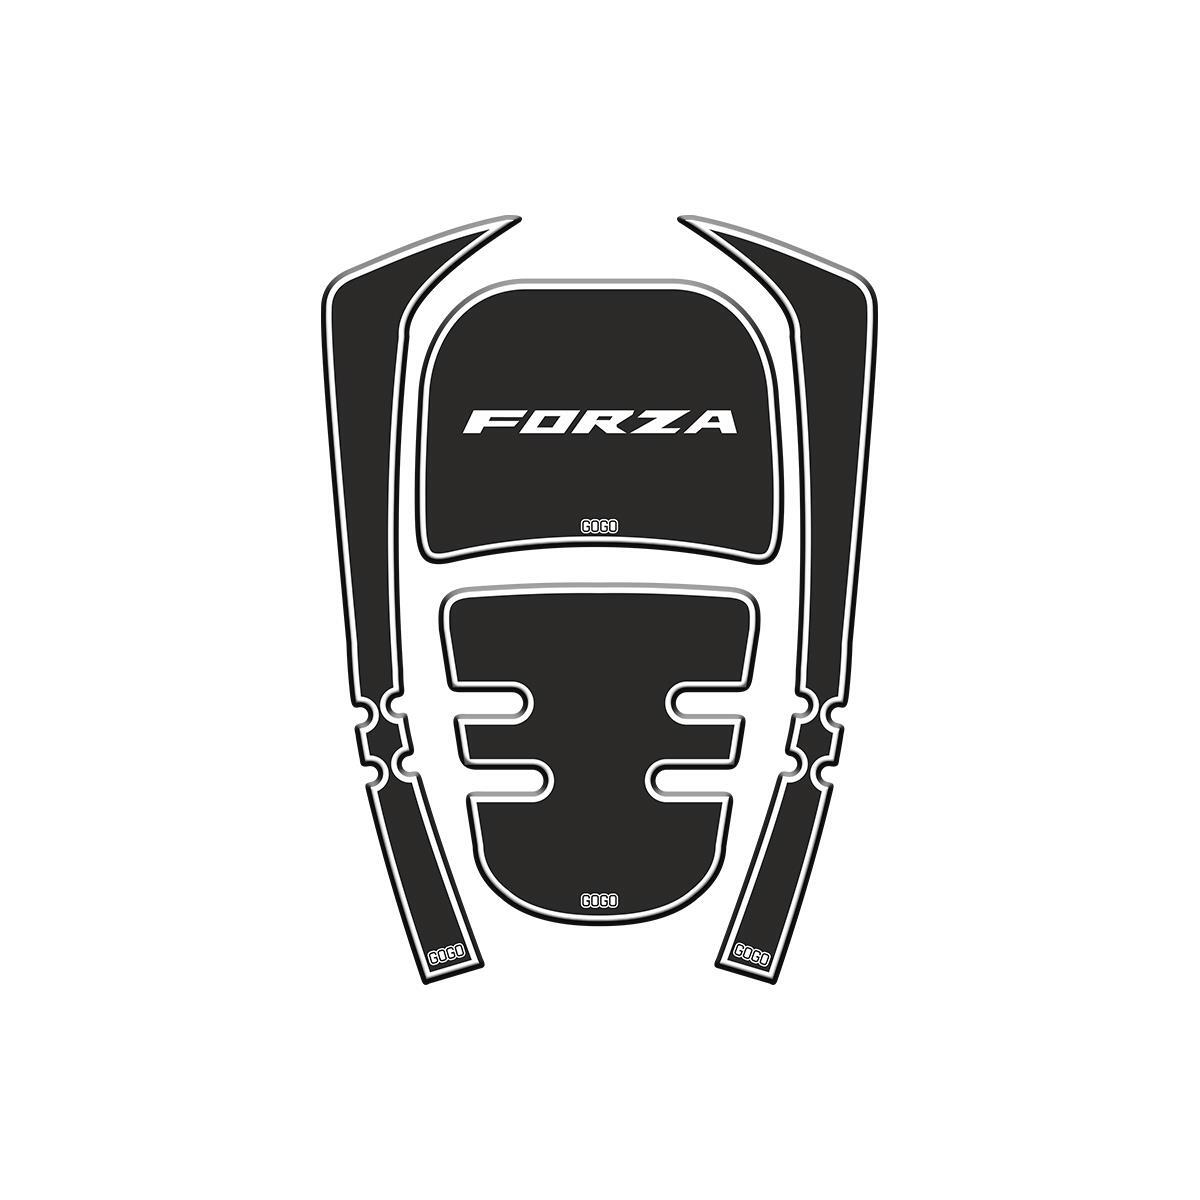 Honda Honda Forza 2018 - 2020 Uyumlu Tank Pad 006